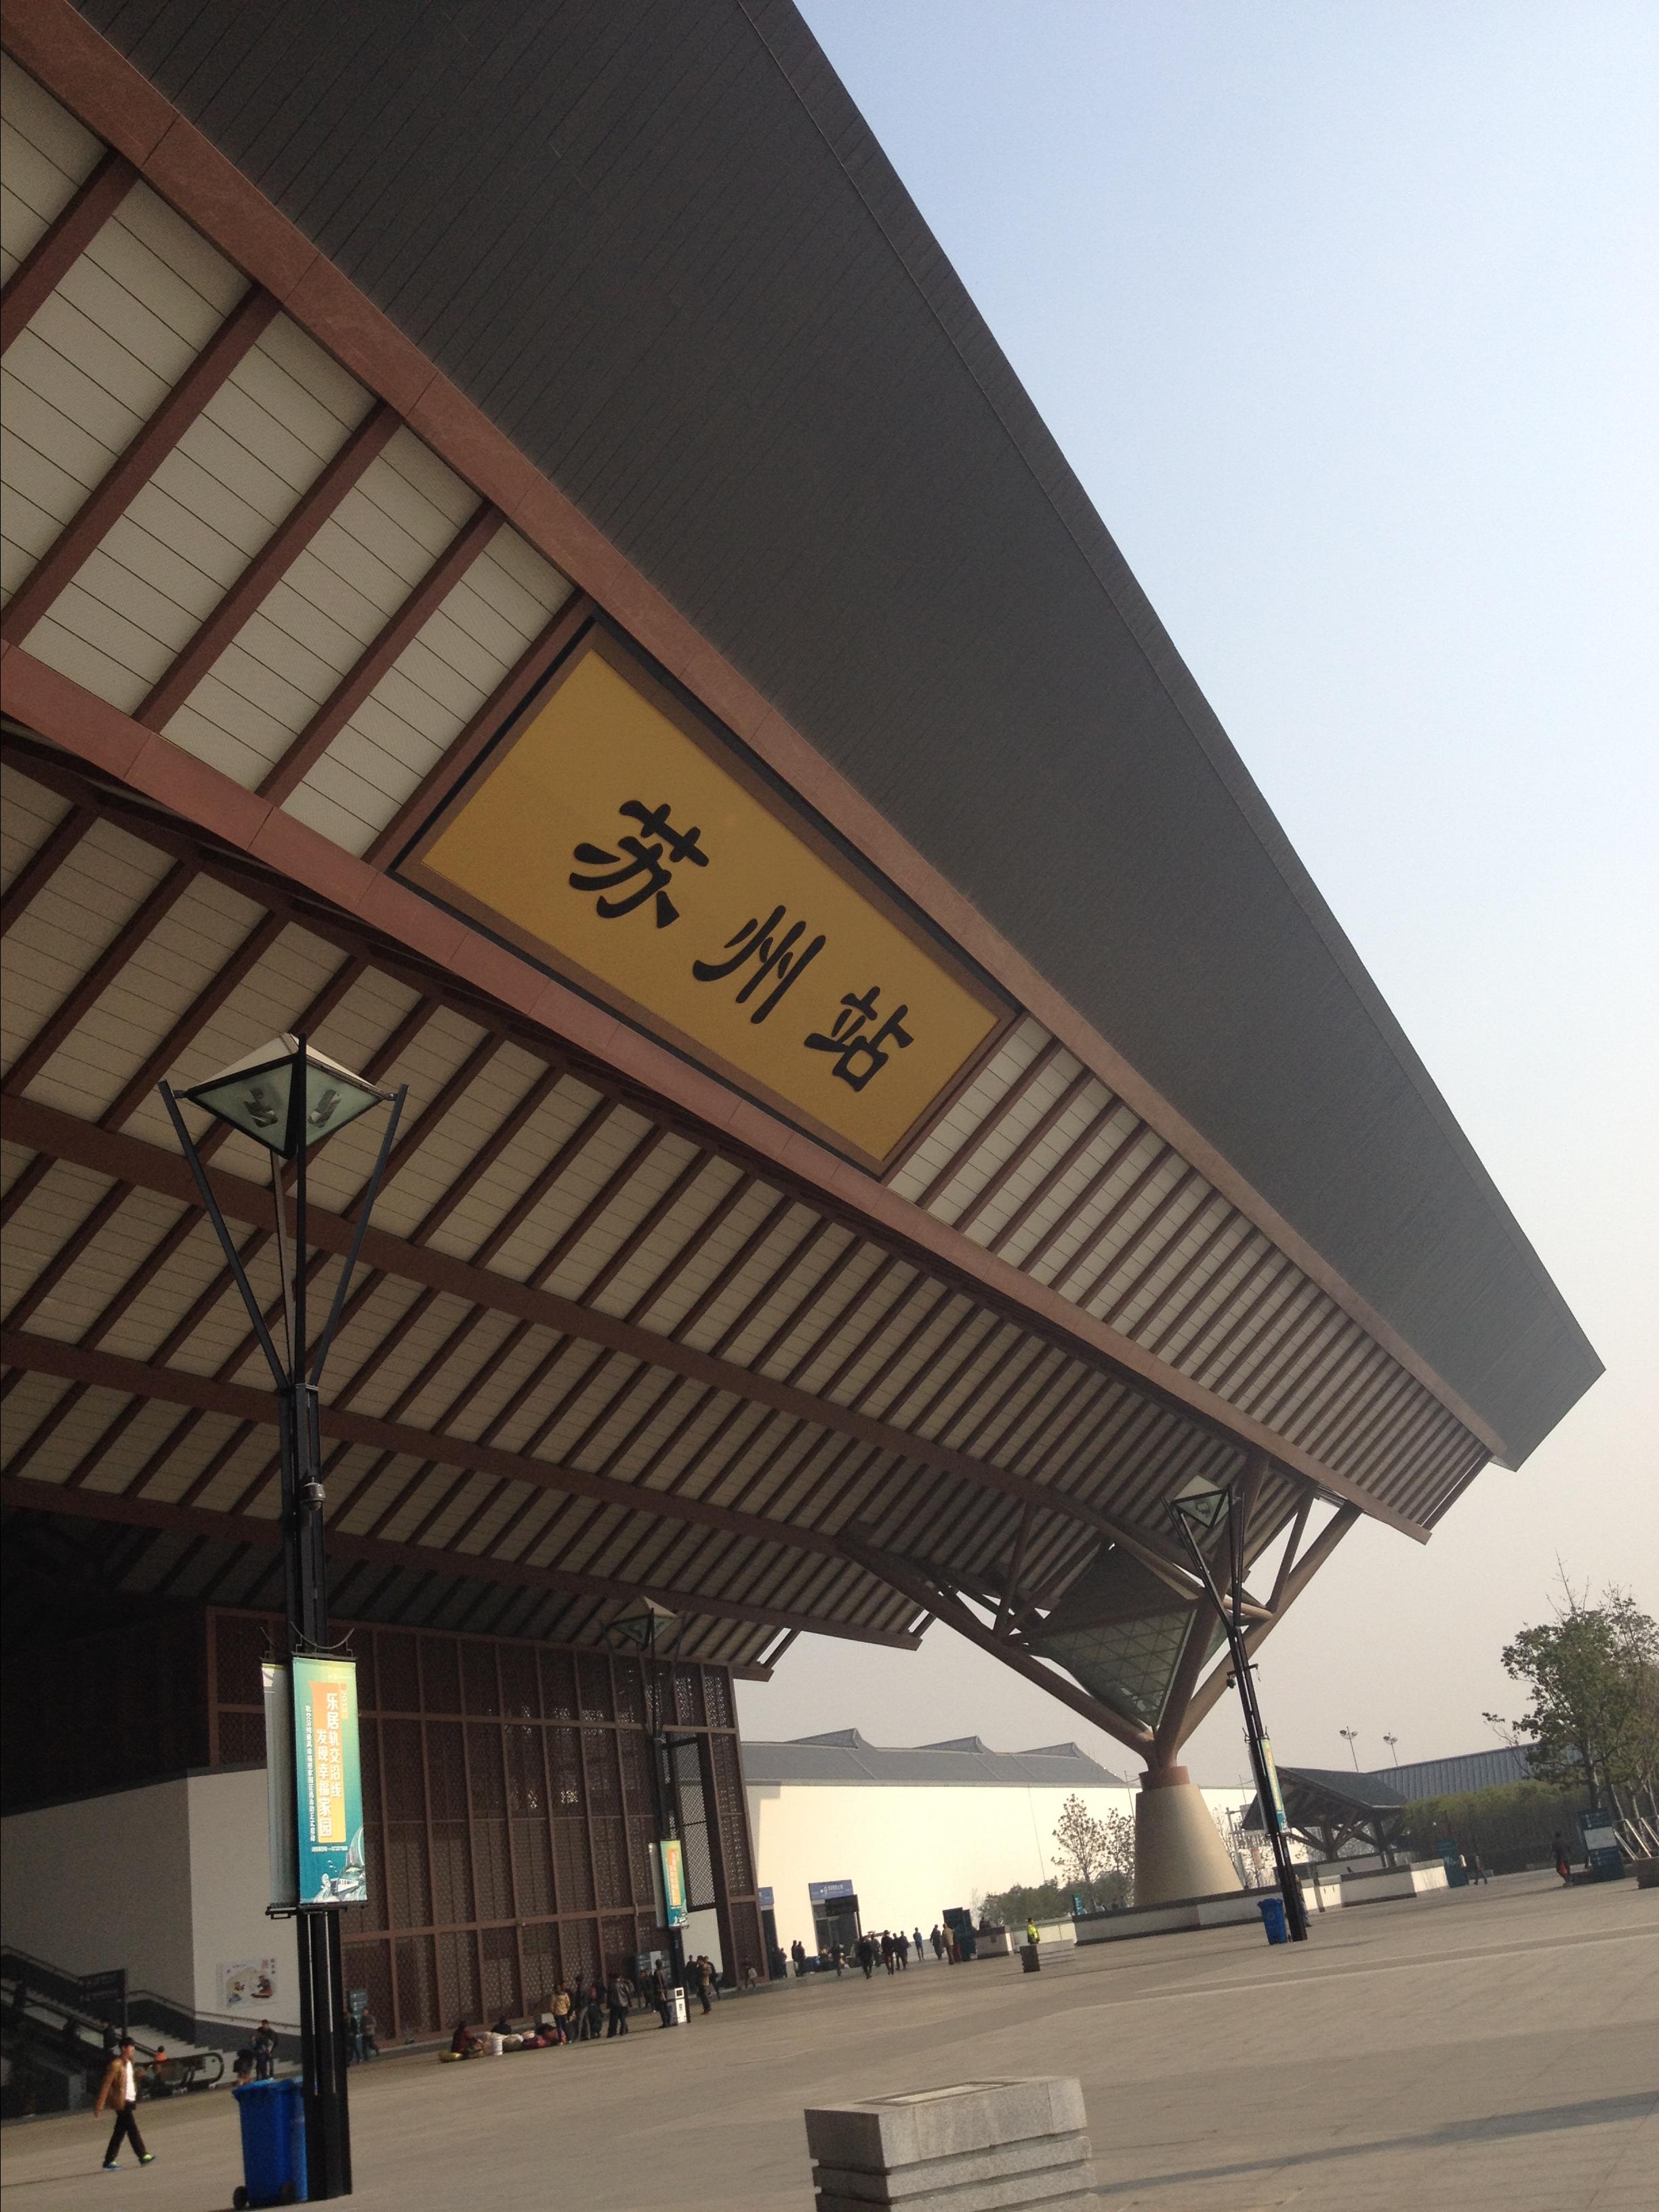            古朴大气的苏州火车站